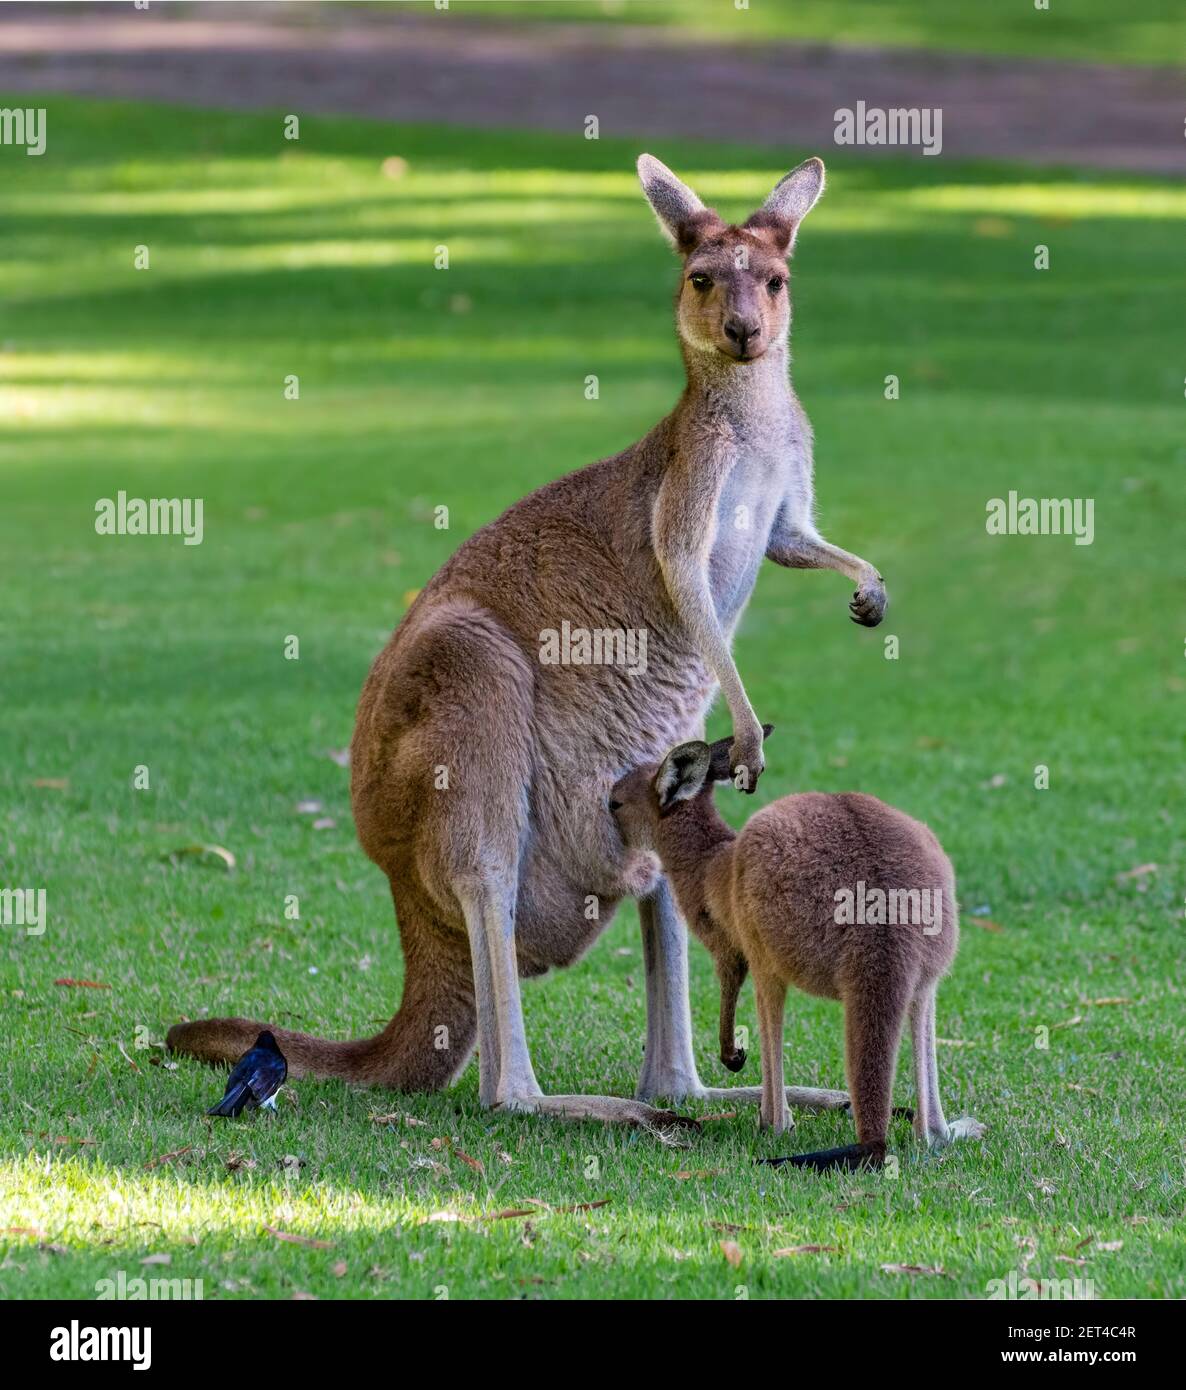 Oiseau assis à côté d'une mère kangourou gris occidental avec son joey, Australie Banque D'Images